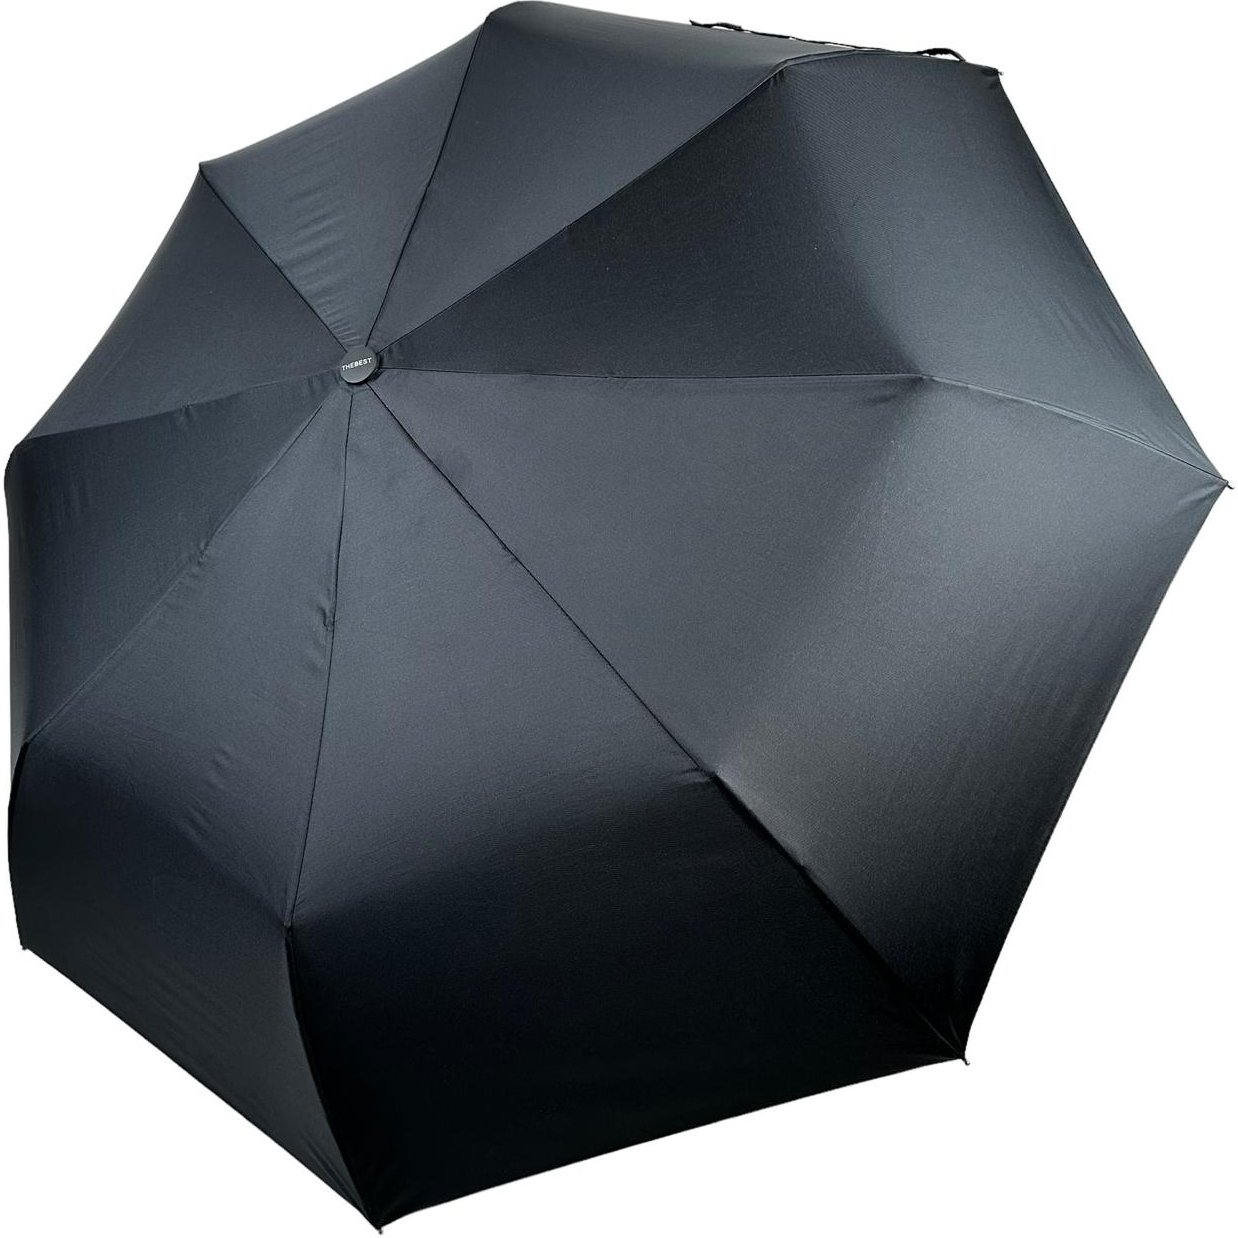 Мужской складной зонтик полуавтомат The Best 99 см черный - фото 1